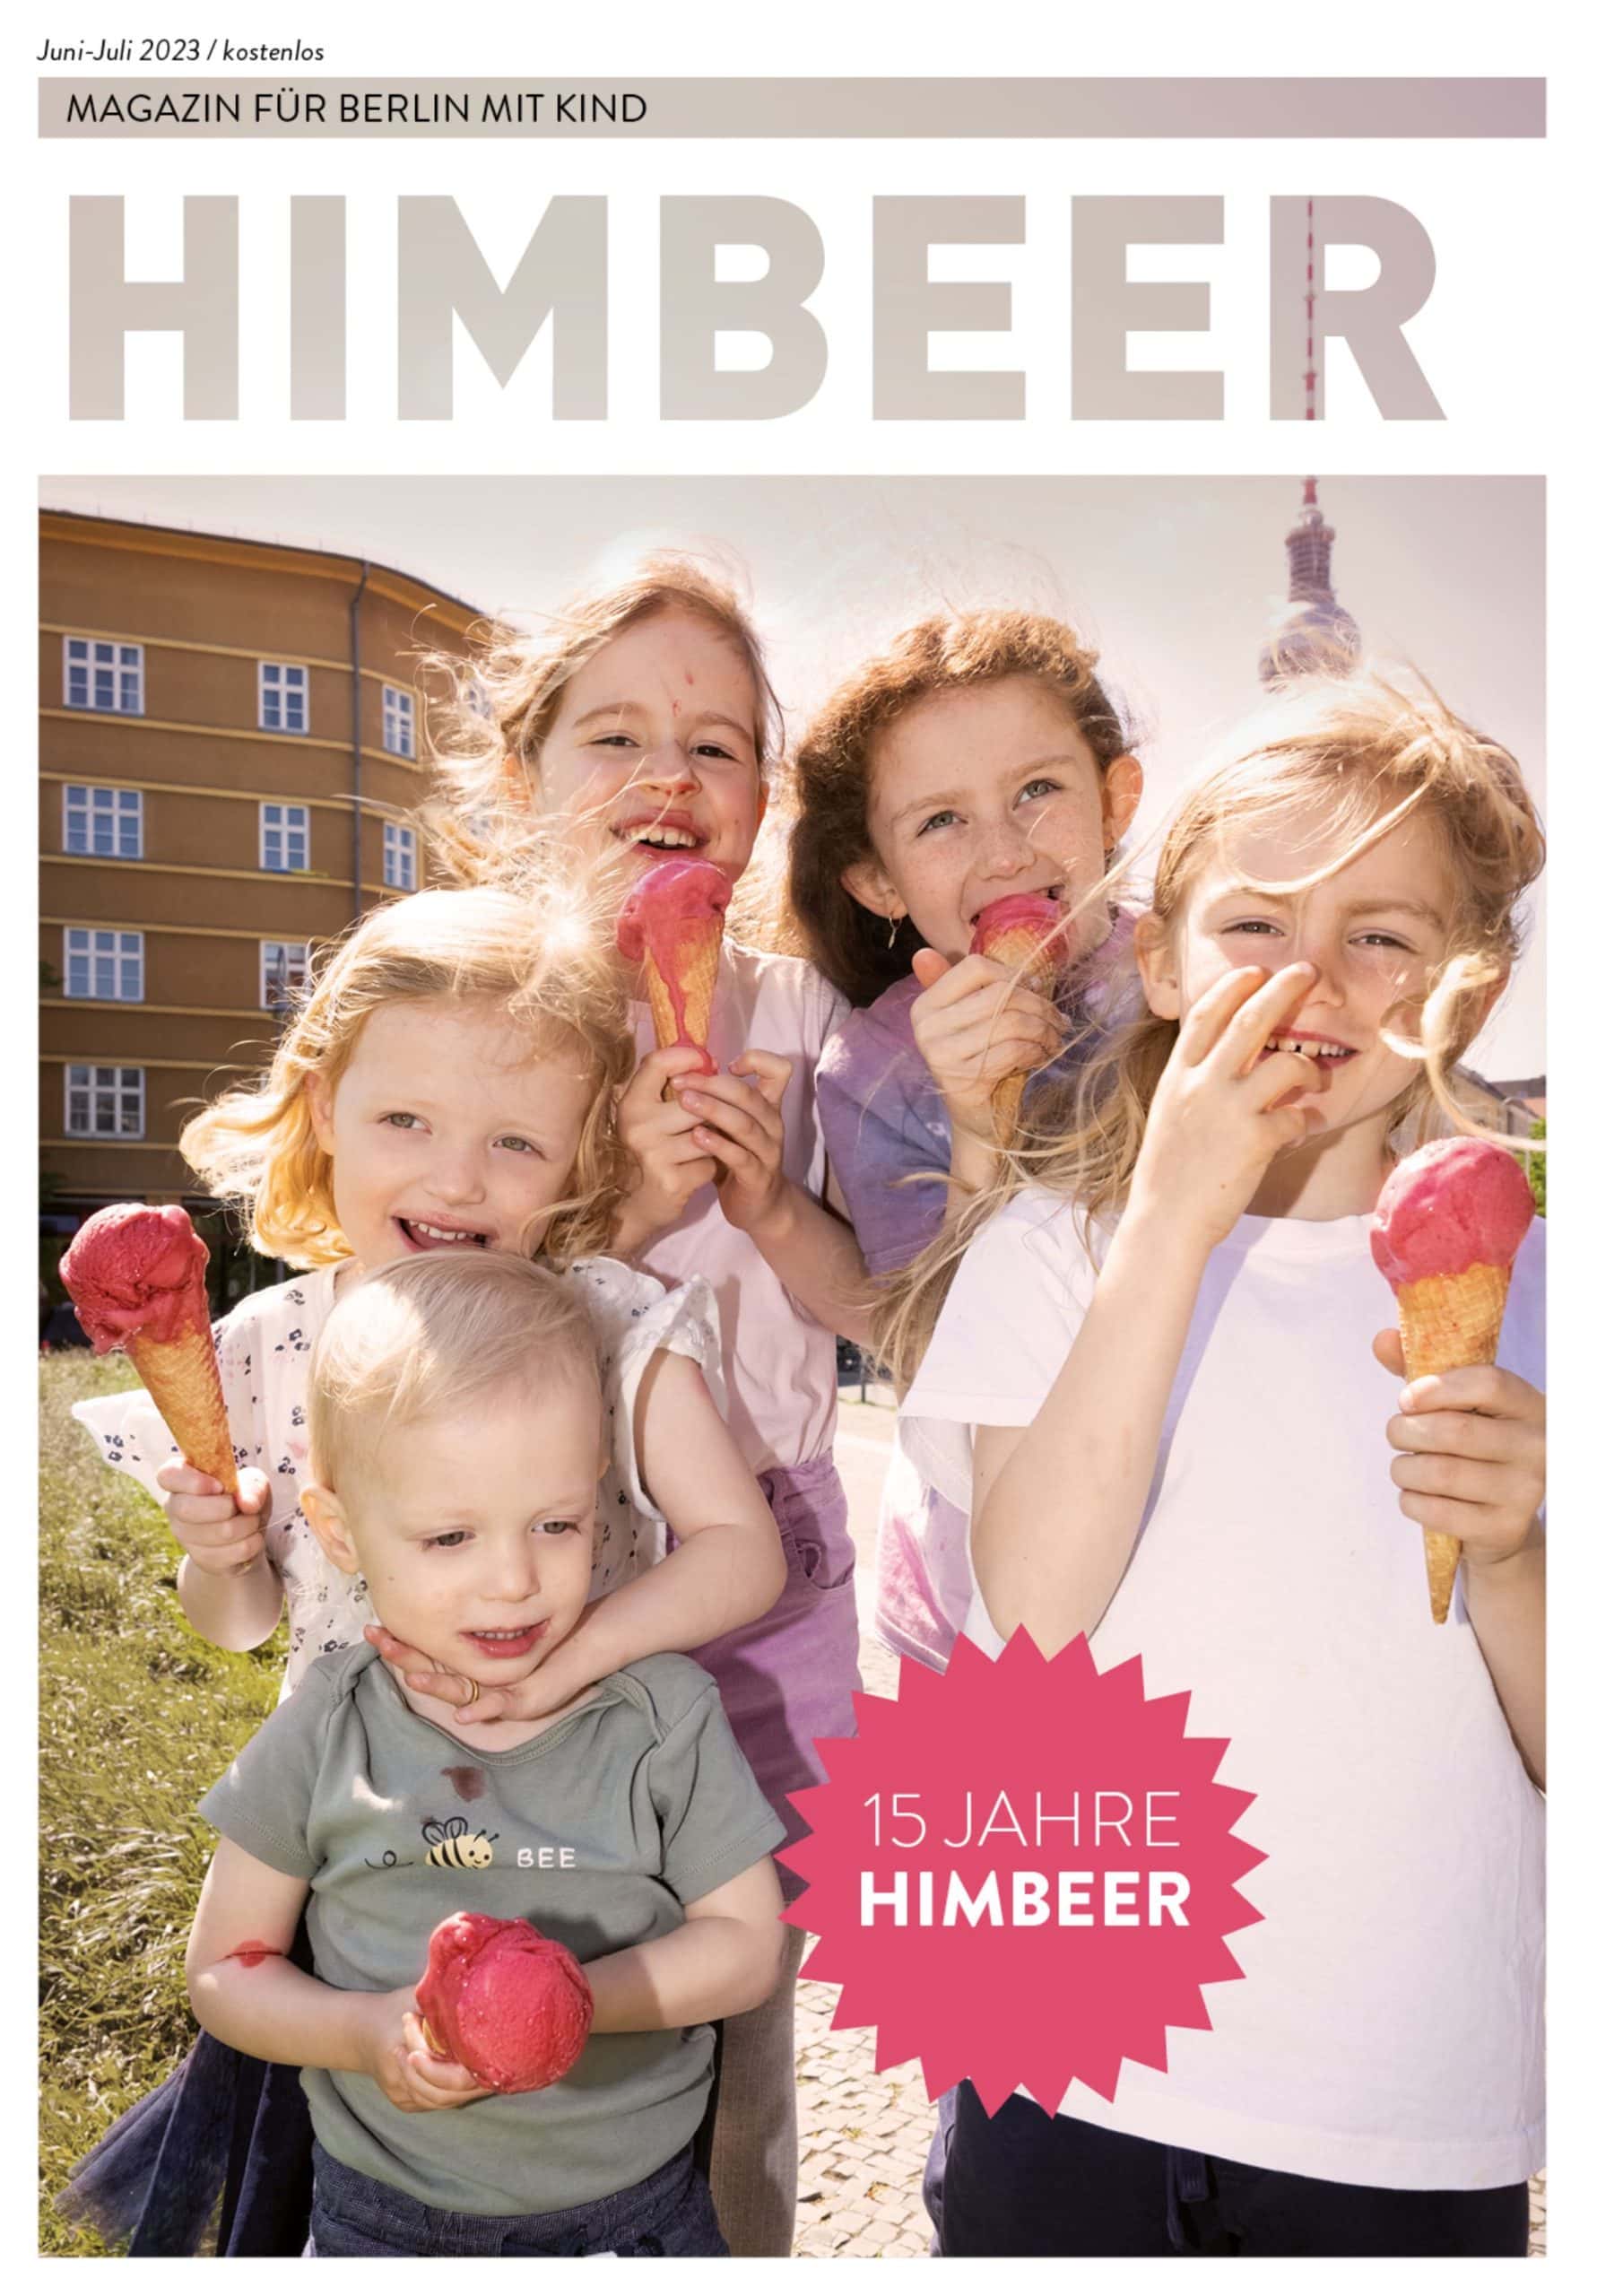 15 Jahre Himbeer – Jubiläum Mit Dem Himbeer Magazin Für Berlin Mit Kind Juni-Juli 2023 // Himbeer